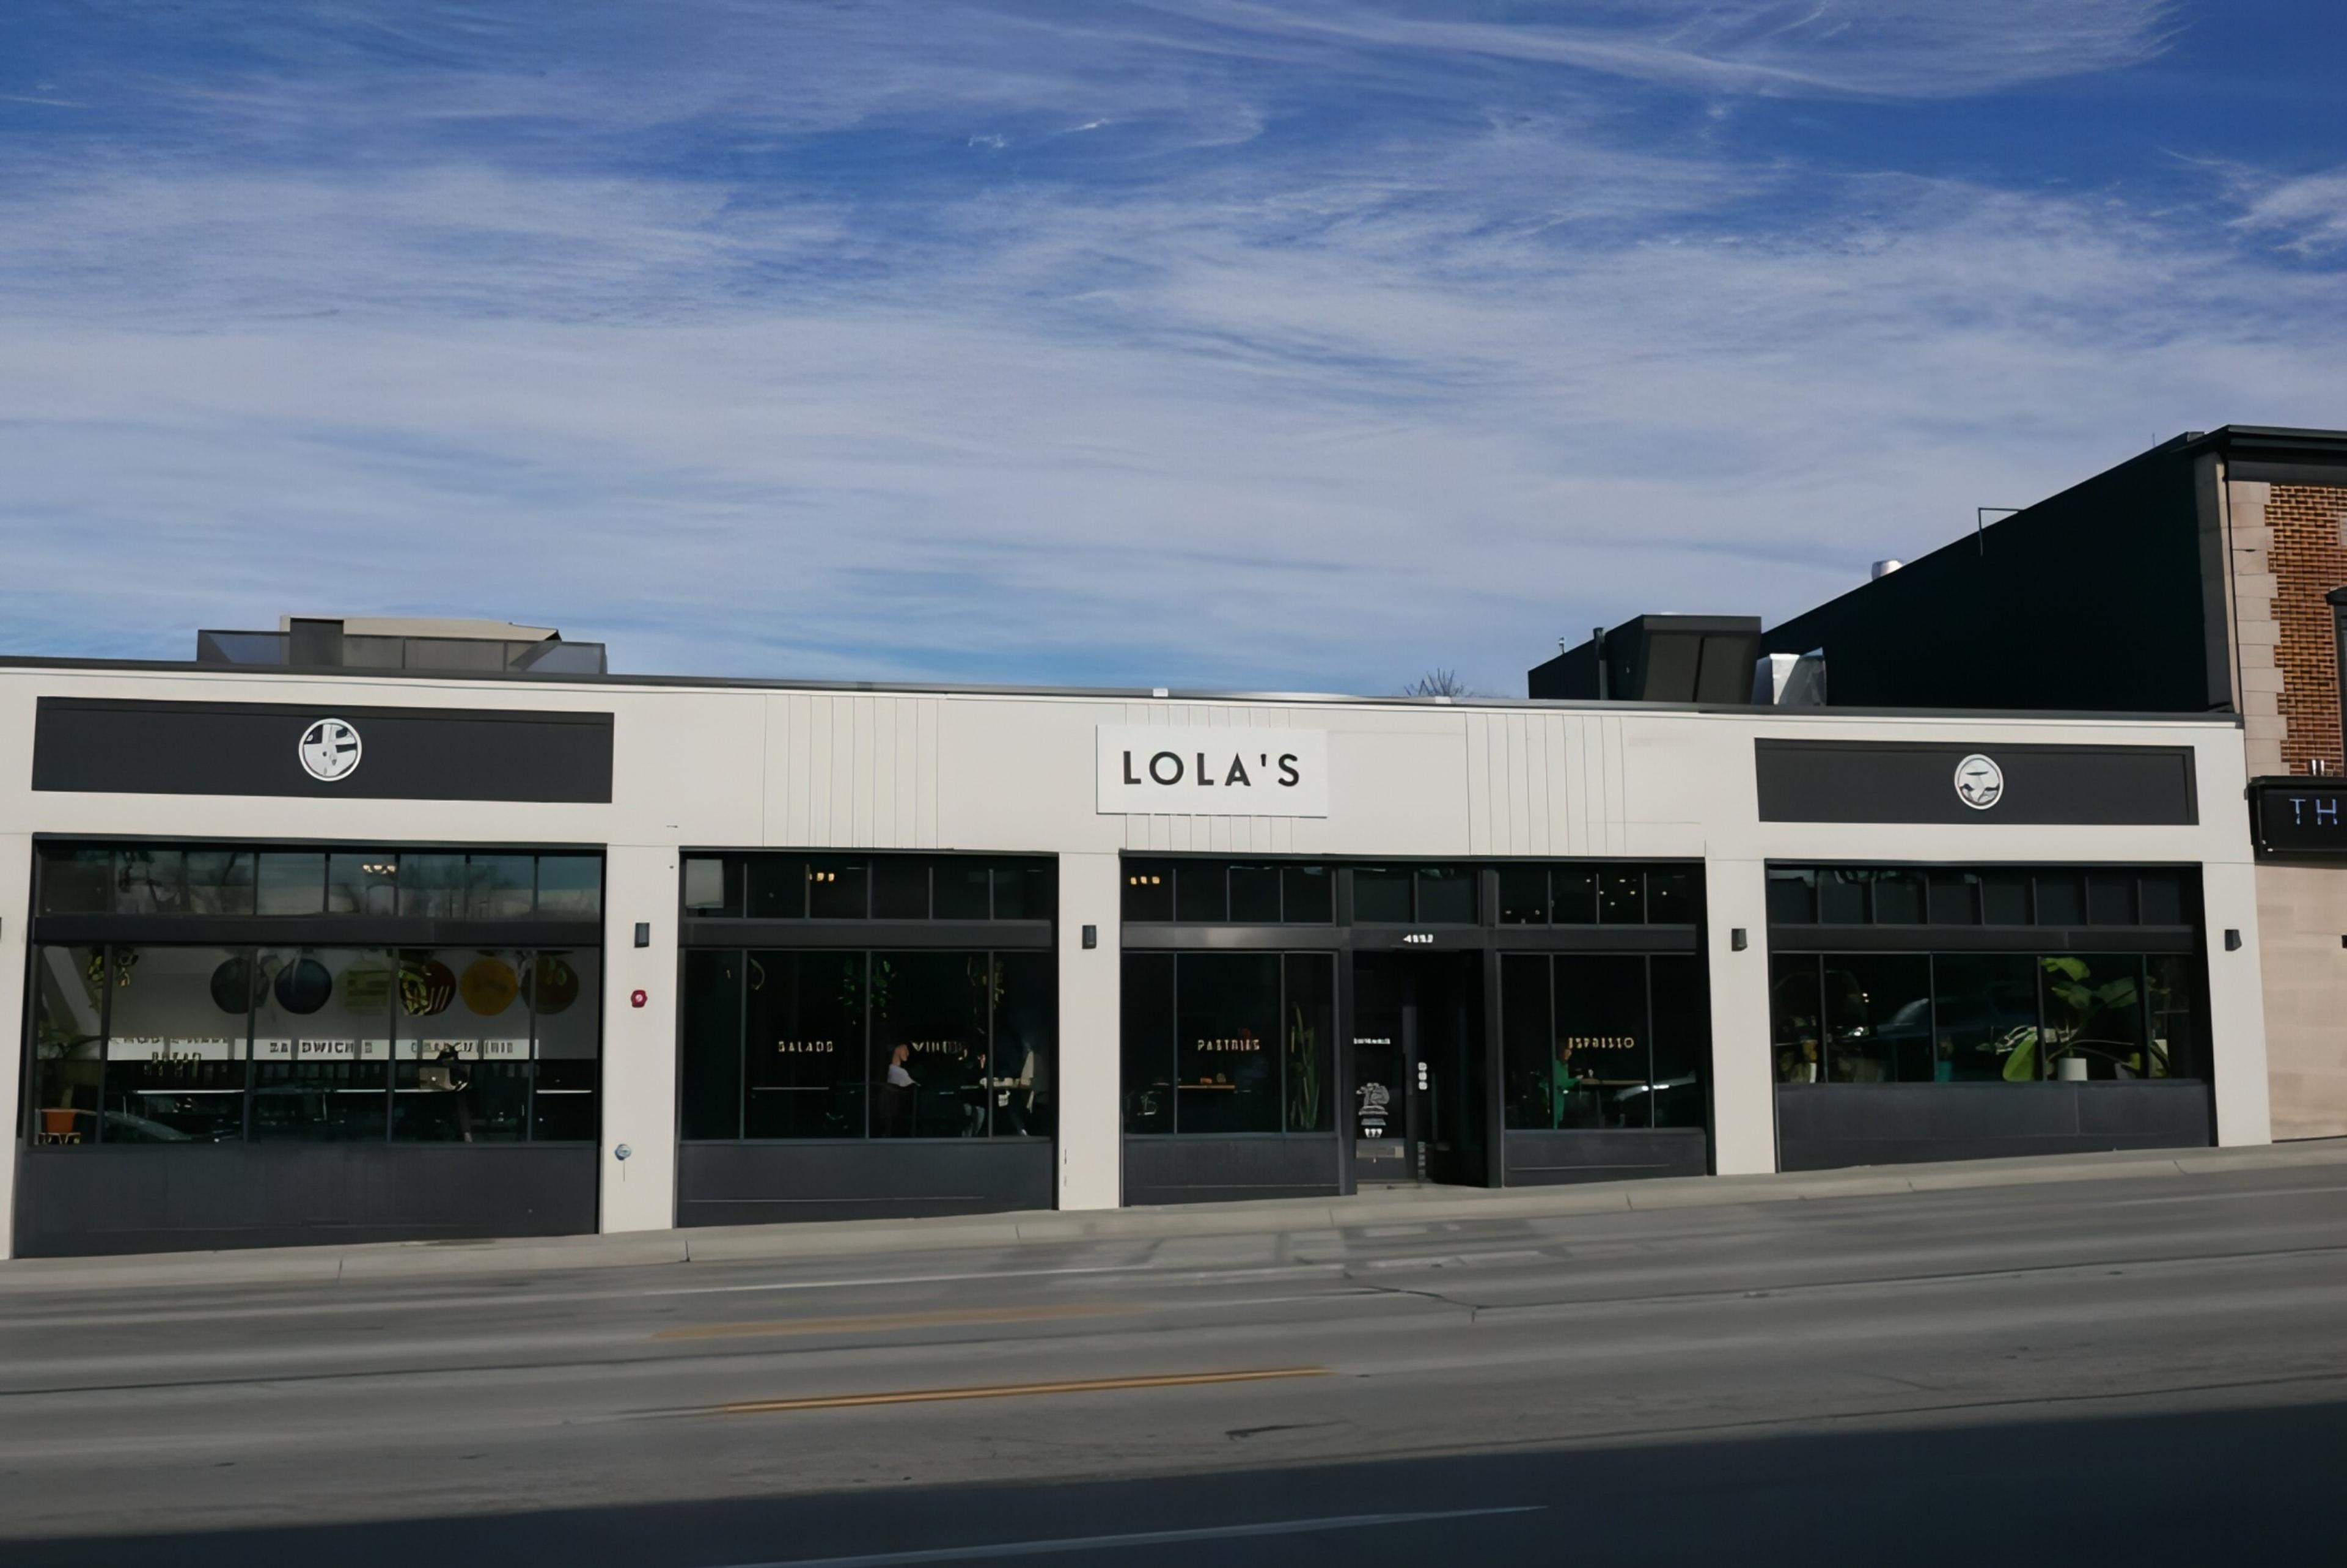 Lola's Cafe